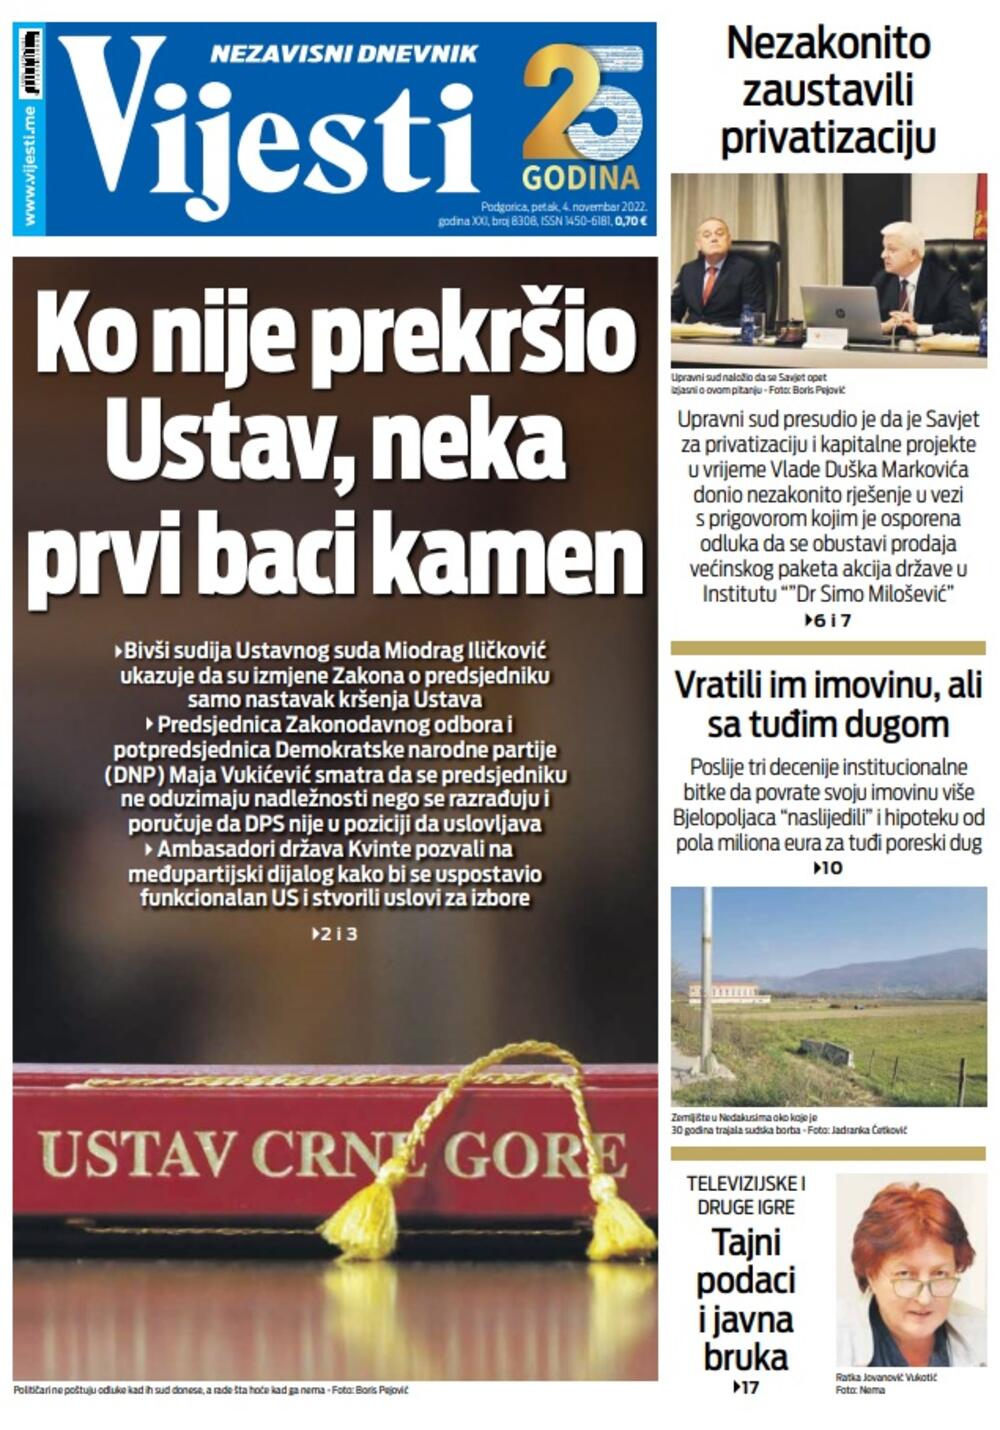 Naslovna strana "Vijesti" za 4. novembar 2022., Foto: Vijesti